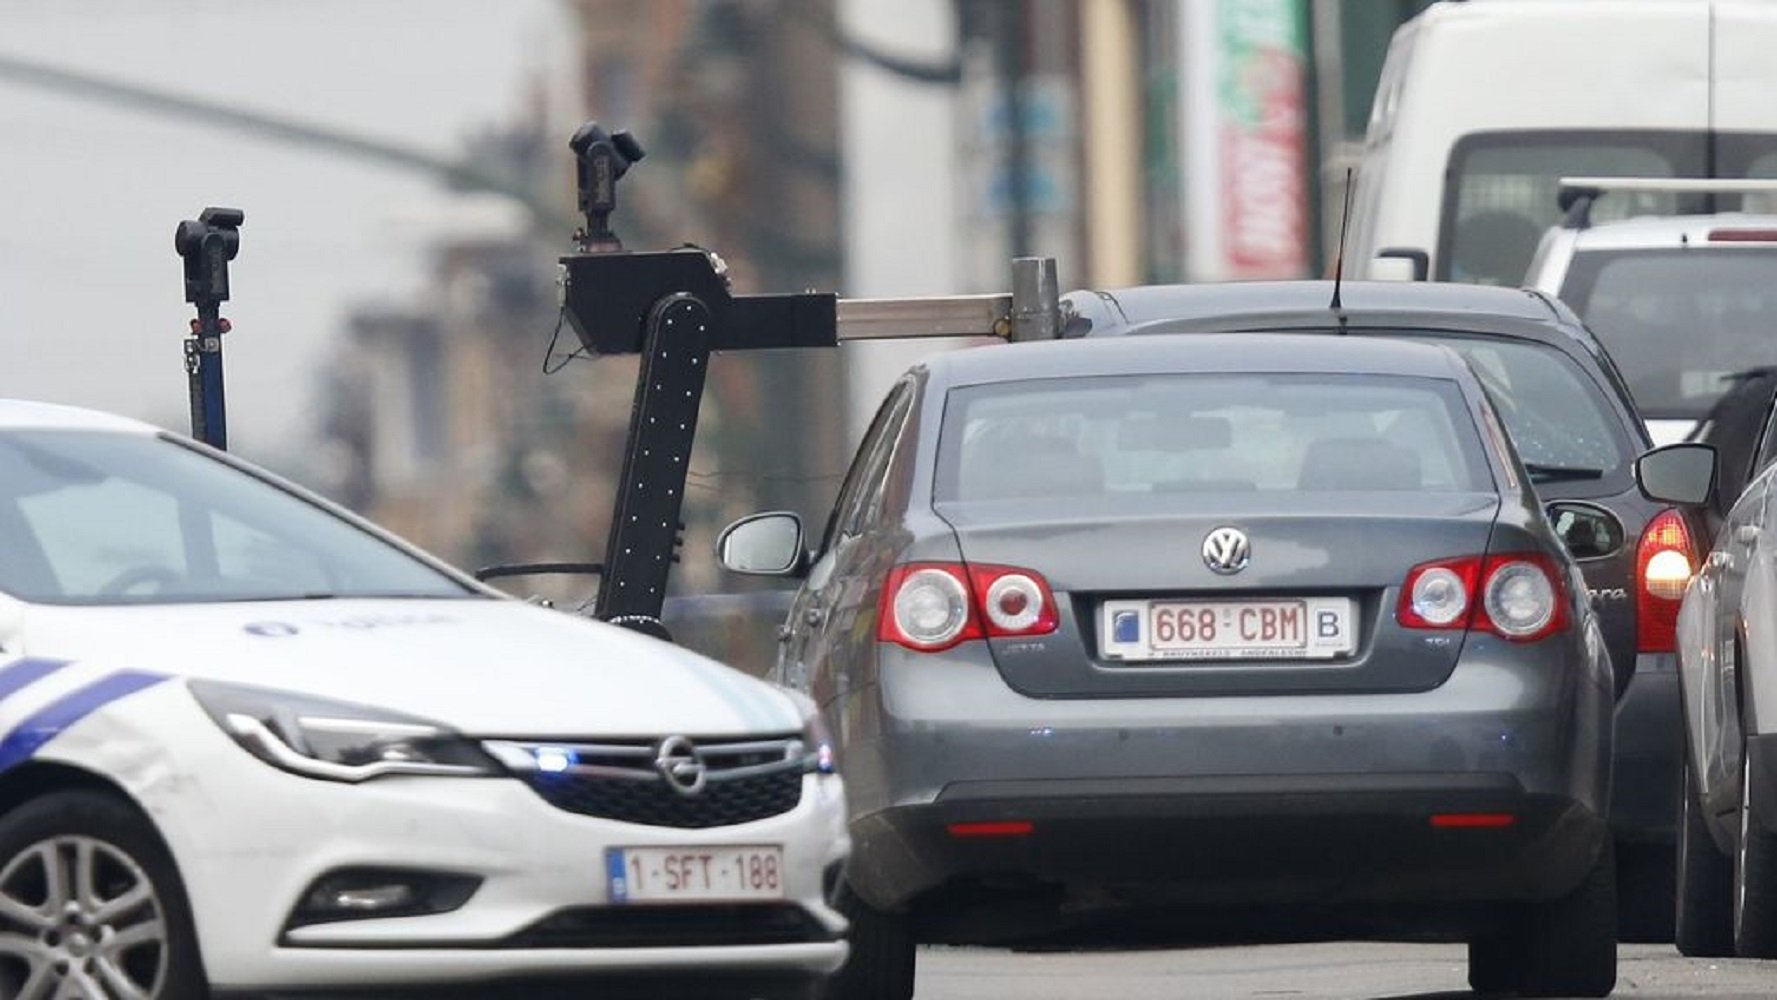 Policies belgues disparen a un vehicle i el conductor declara que hi duia explosius